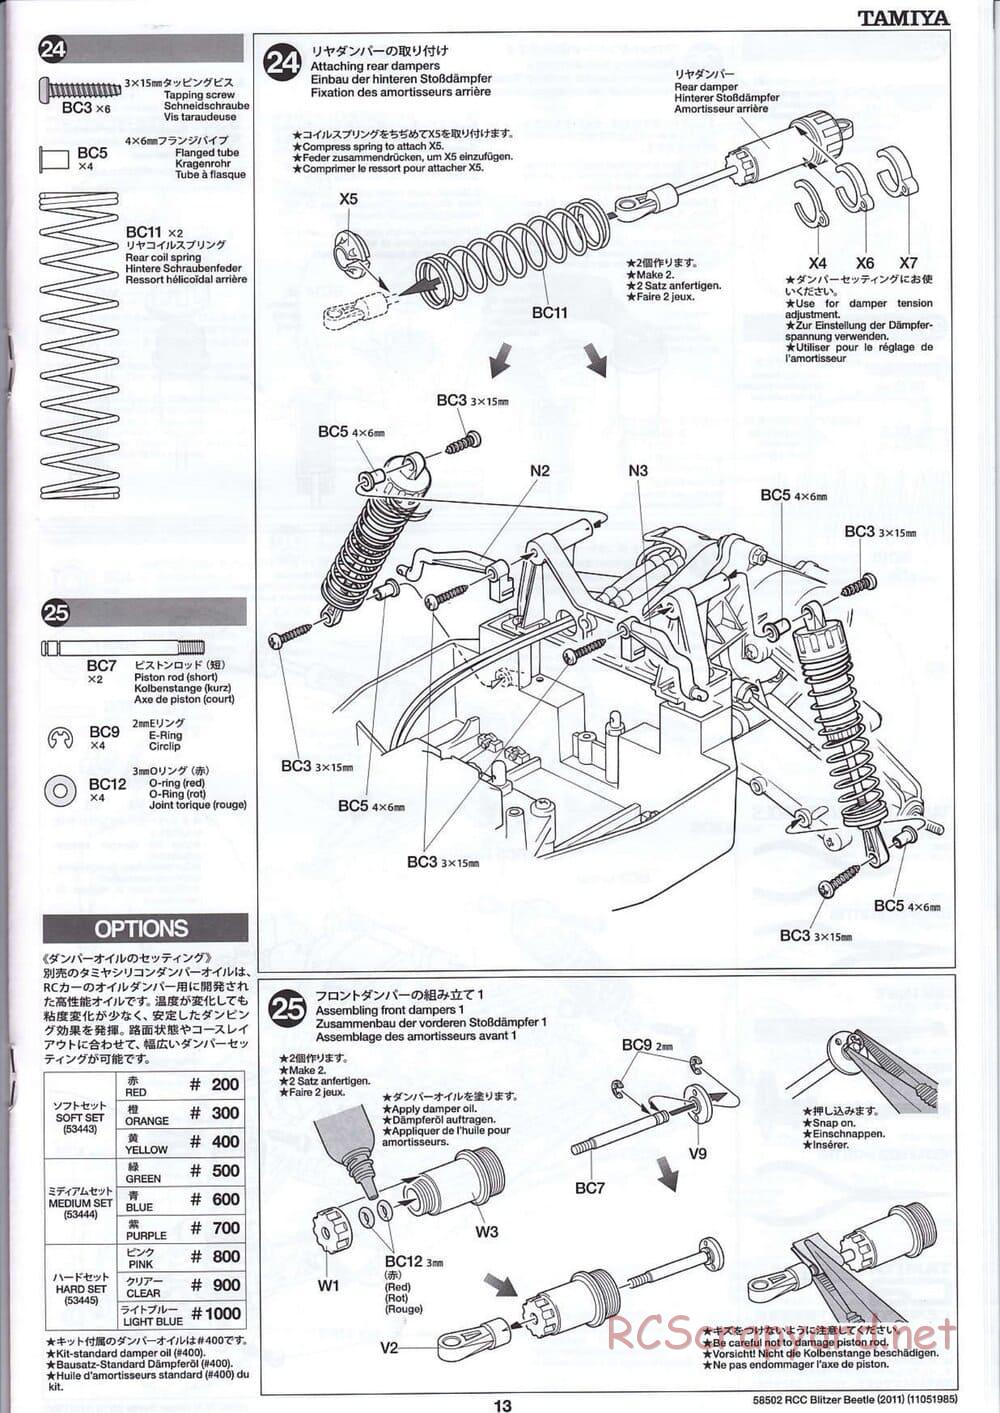 Tamiya - Blitzer Beetle 2011 - FAL Chassis - Manual - Page 13